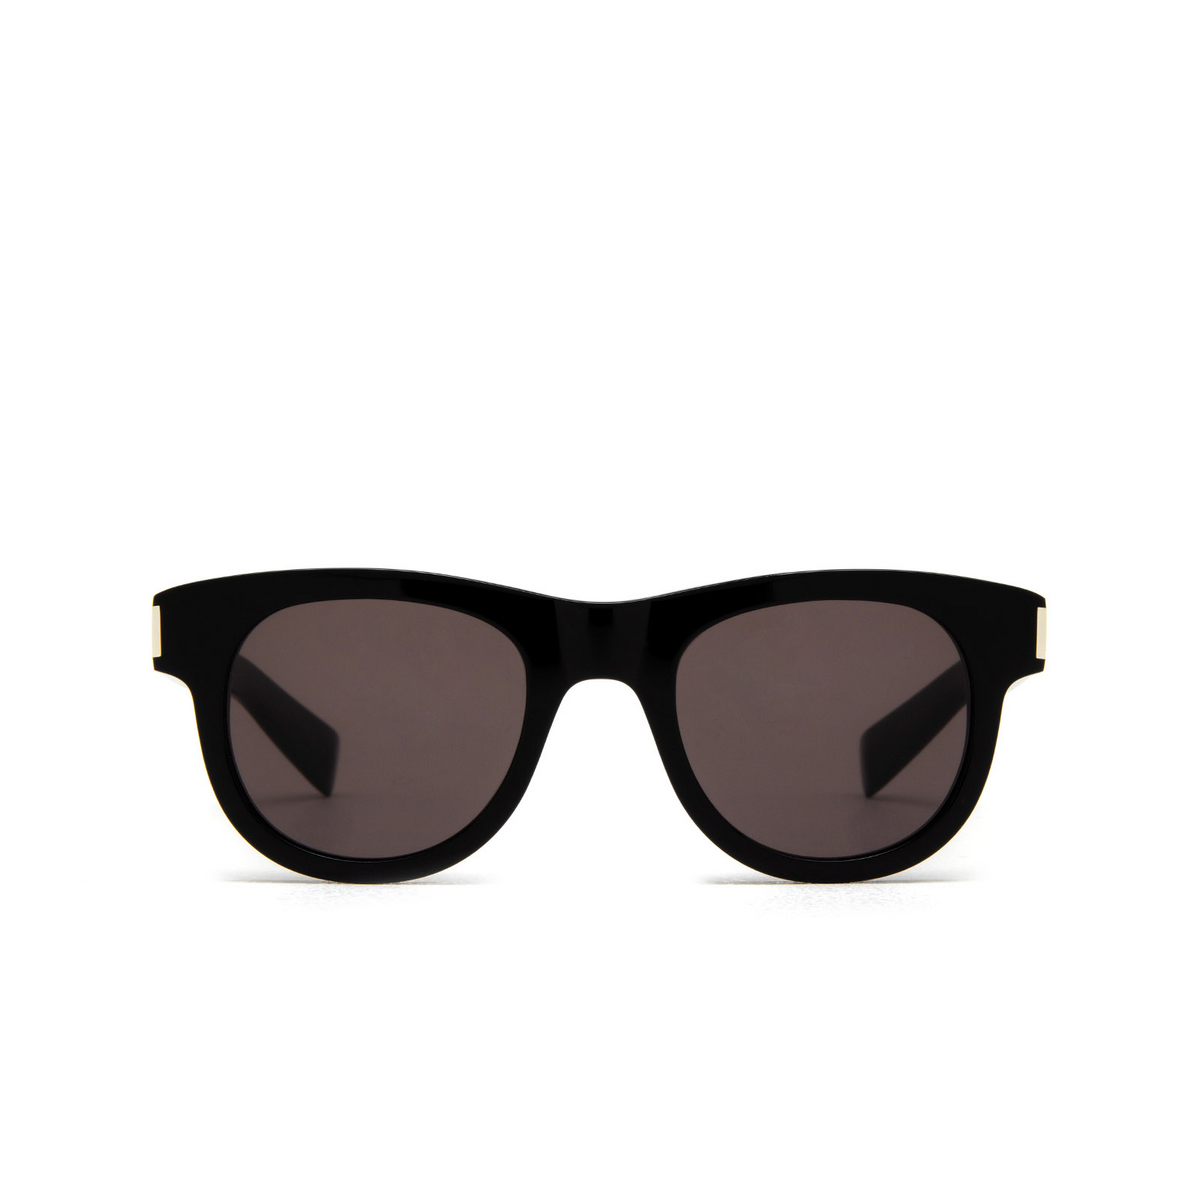 Saint Laurent SL 571 Sunglasses 001 Black - front view